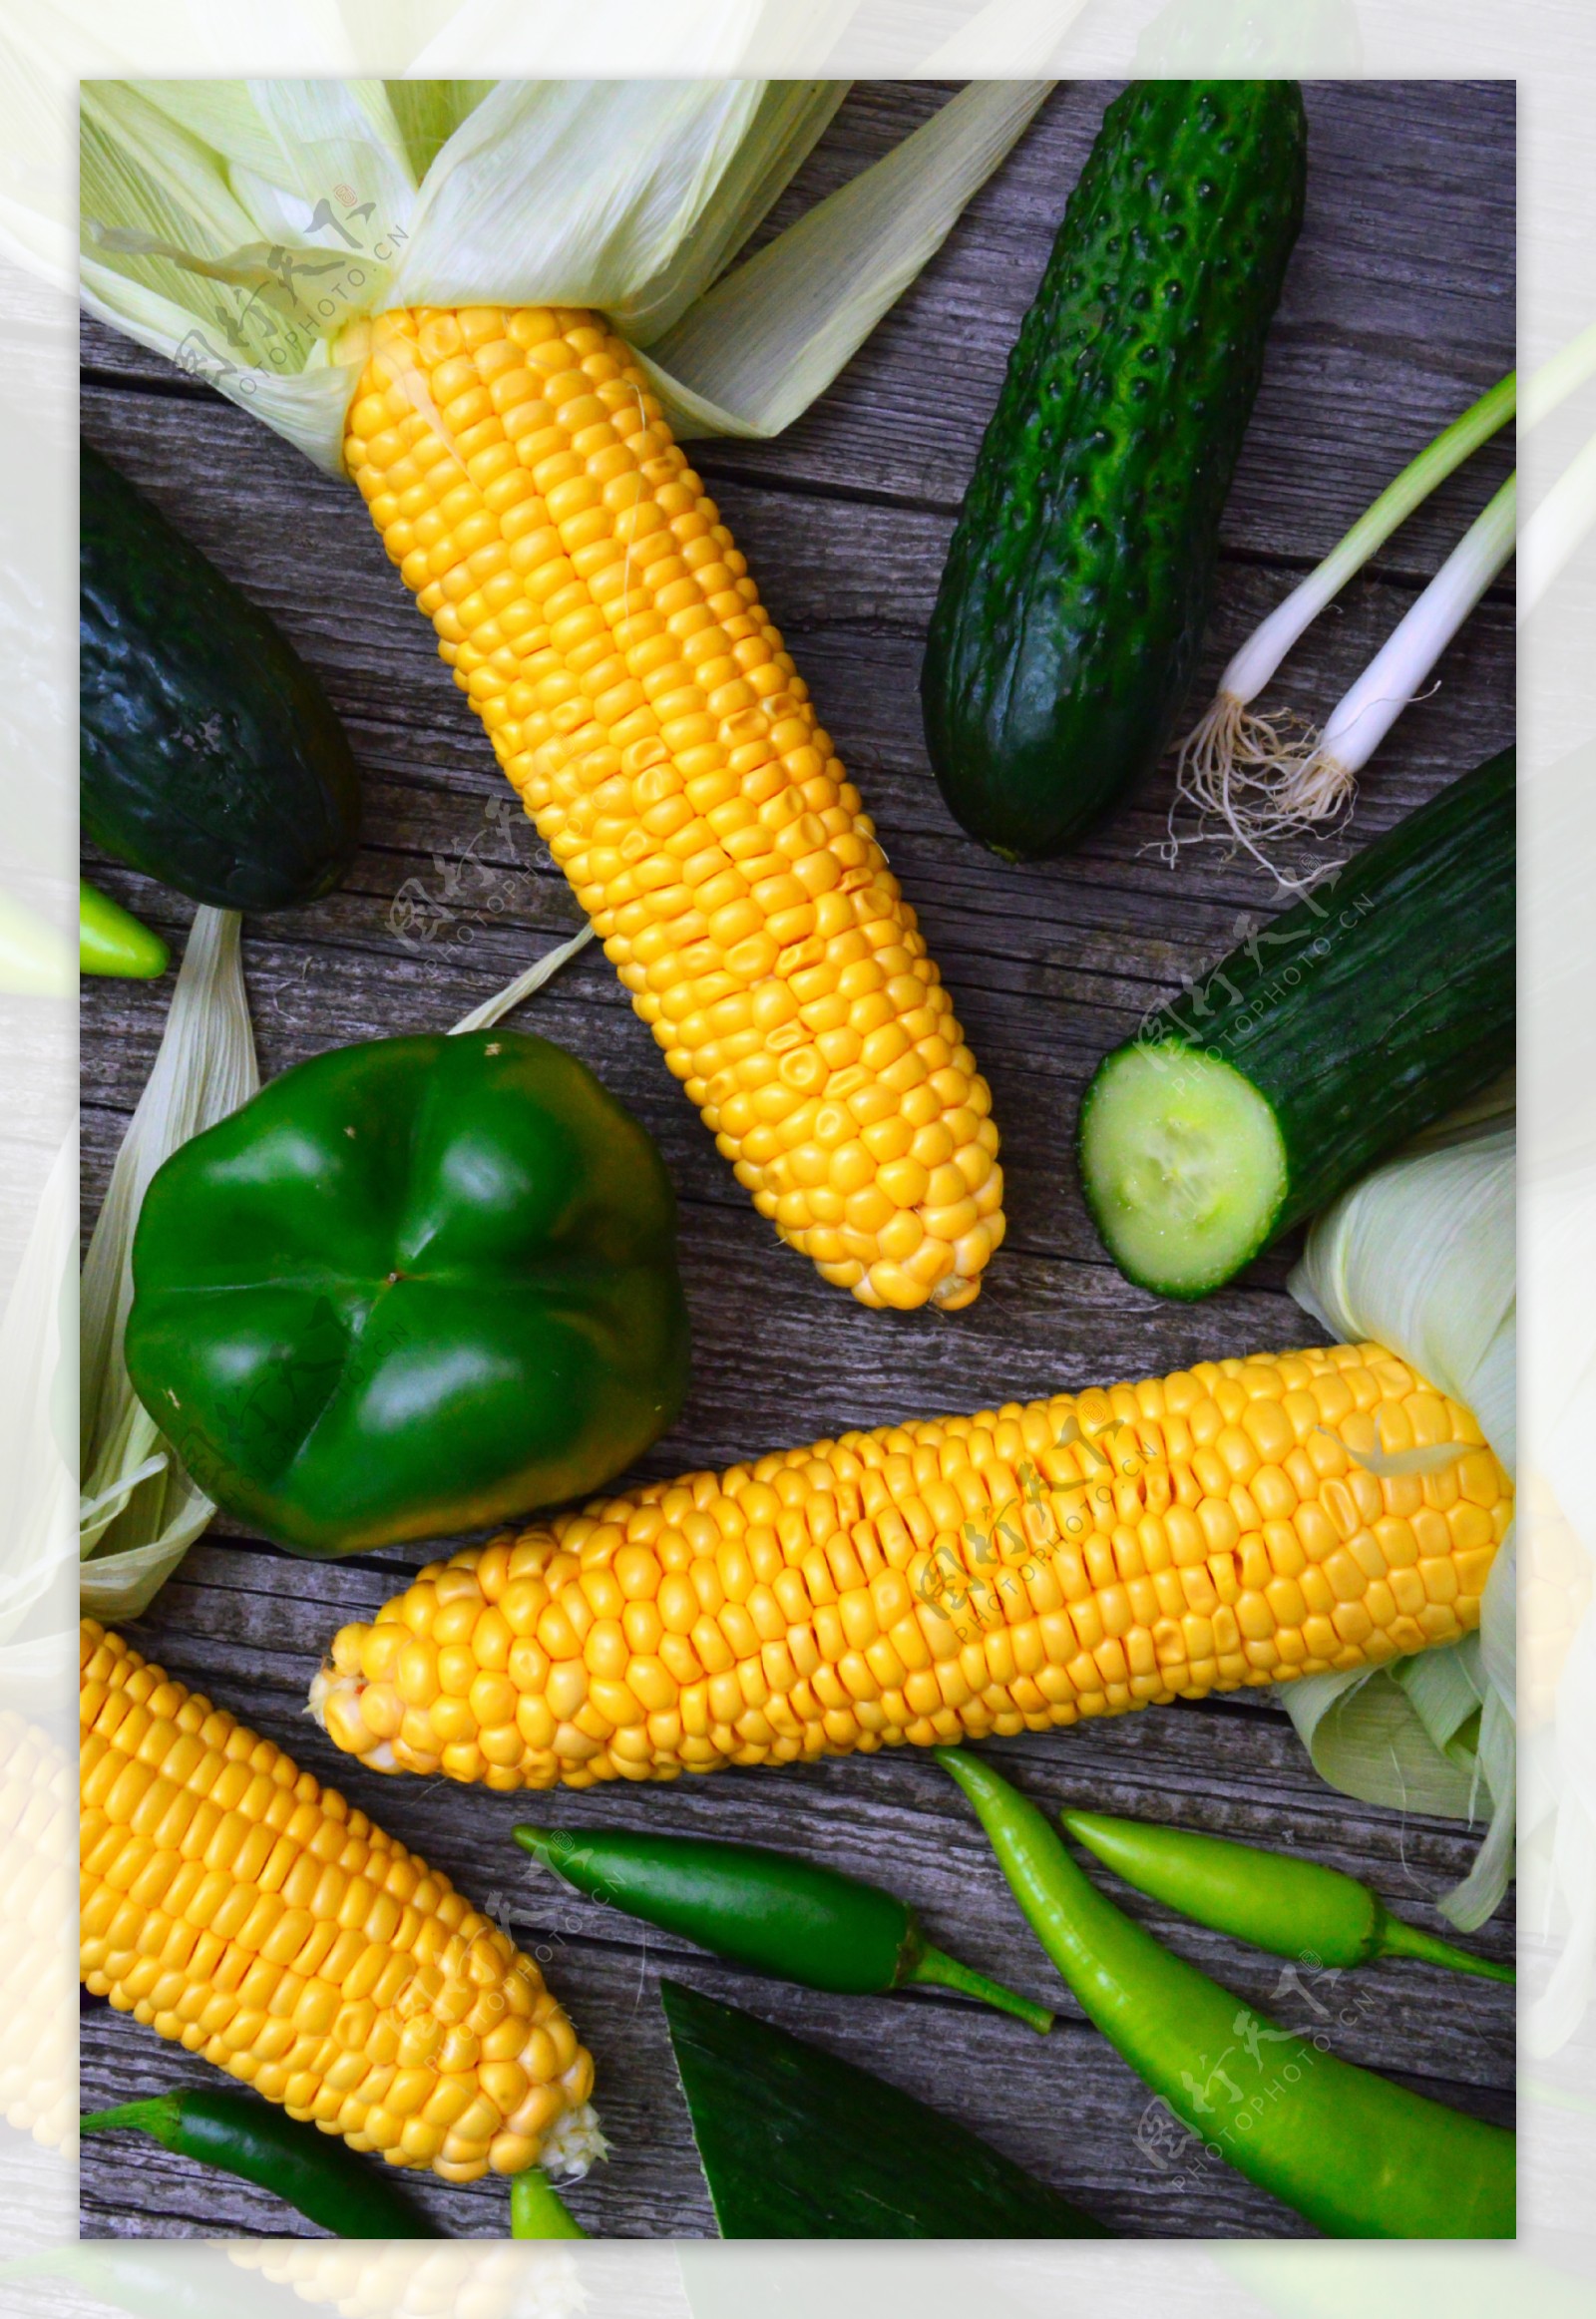 蔬菜海报精品蔬菜有机蔬菜